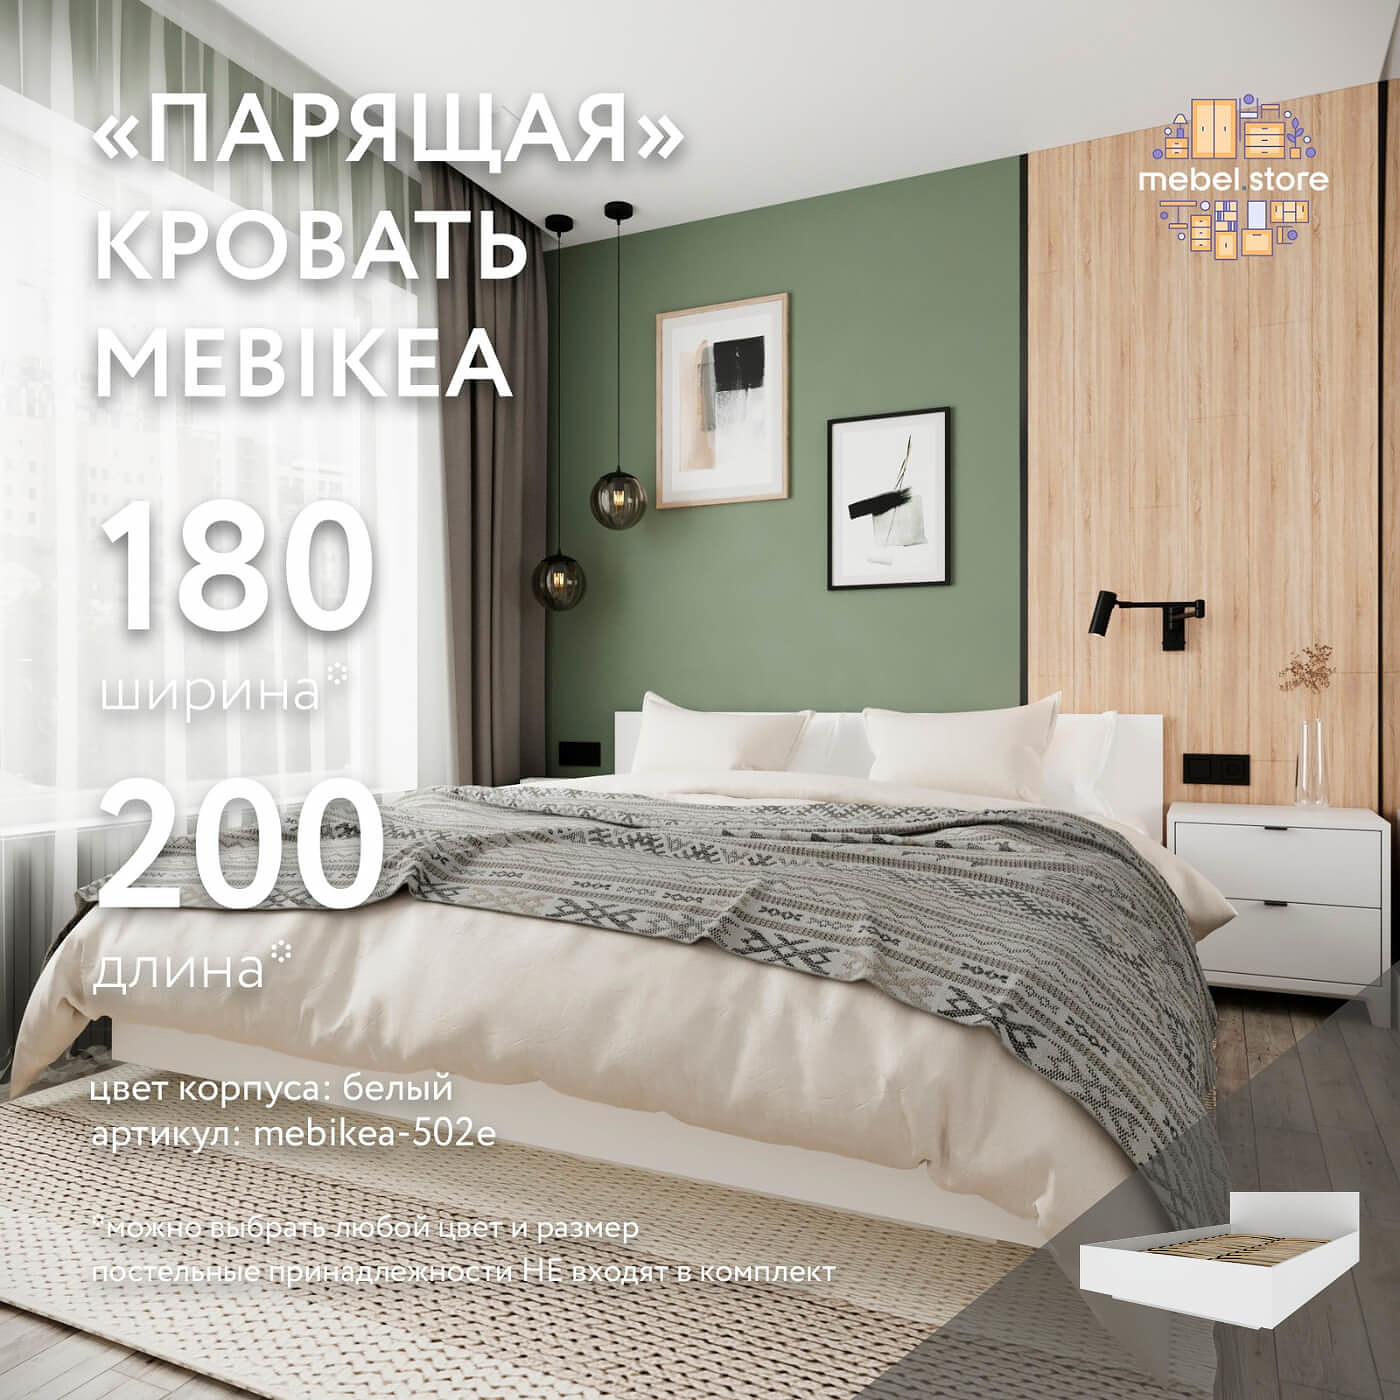 Кровать Mebikea-502e двуспальная минимализм - фото 1 large